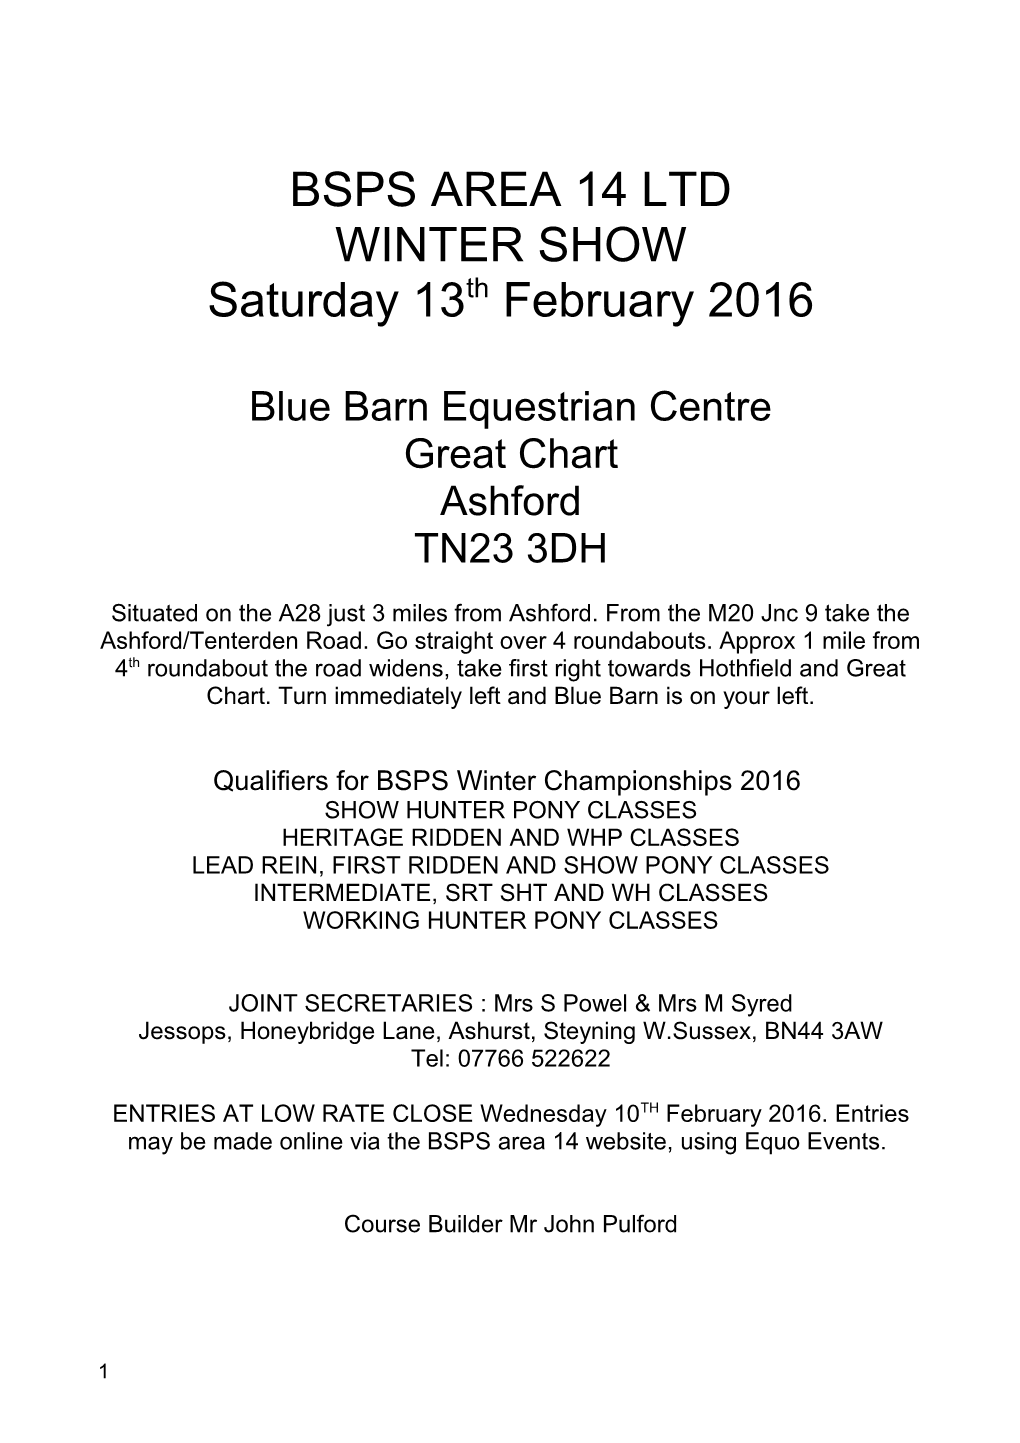 Blue Barn Equestrian Centre